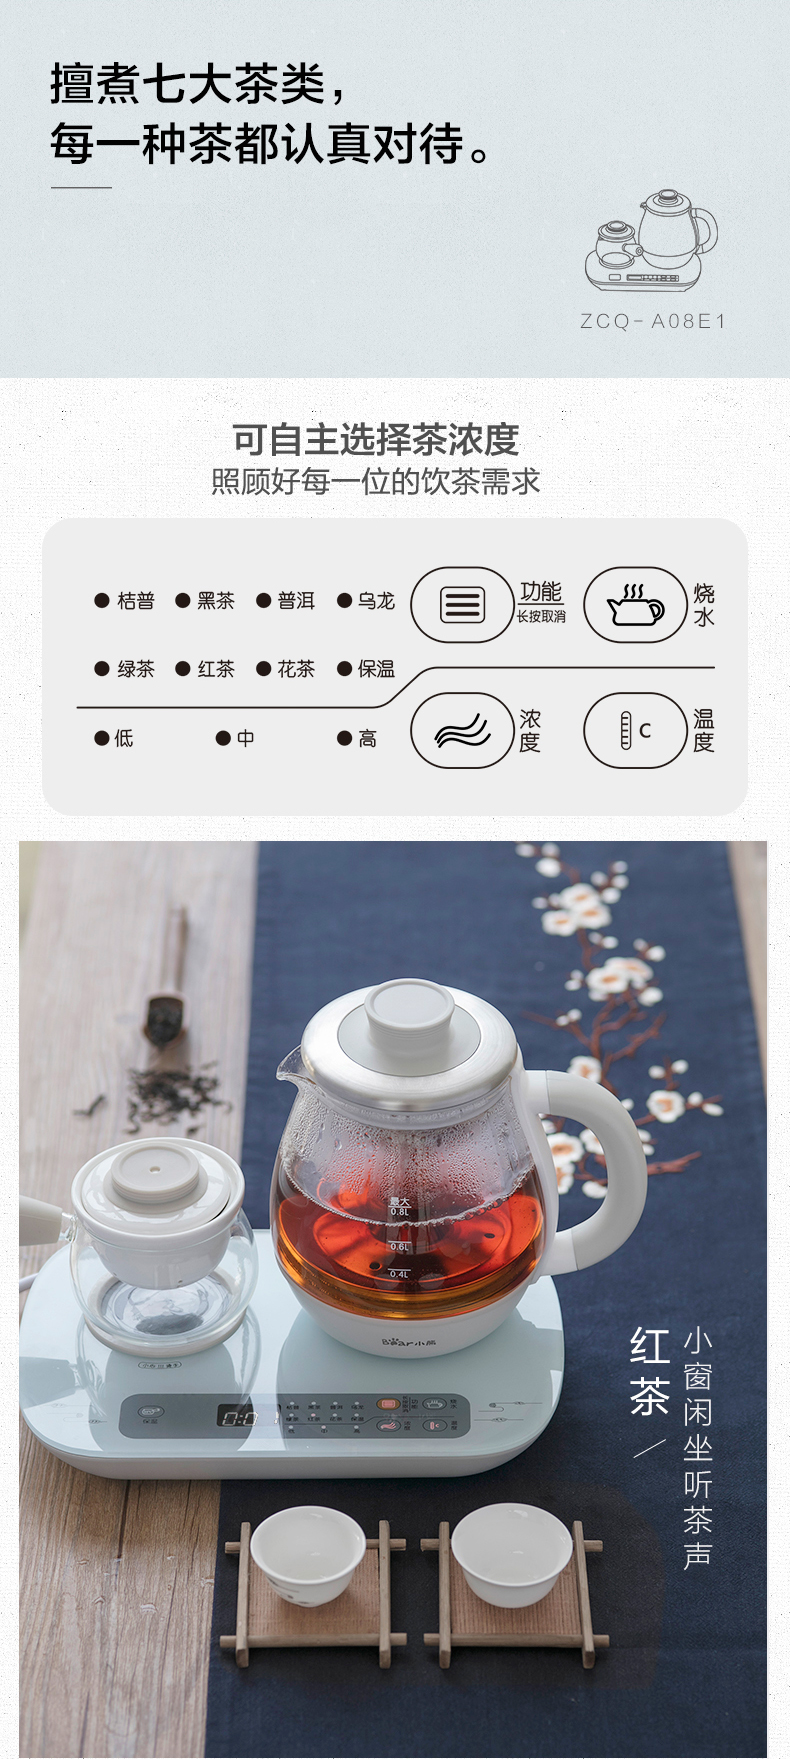 小熊 ZCQ-A08E1煮茶器家用玻璃全自动喷淋式黑茶普洱养生壶